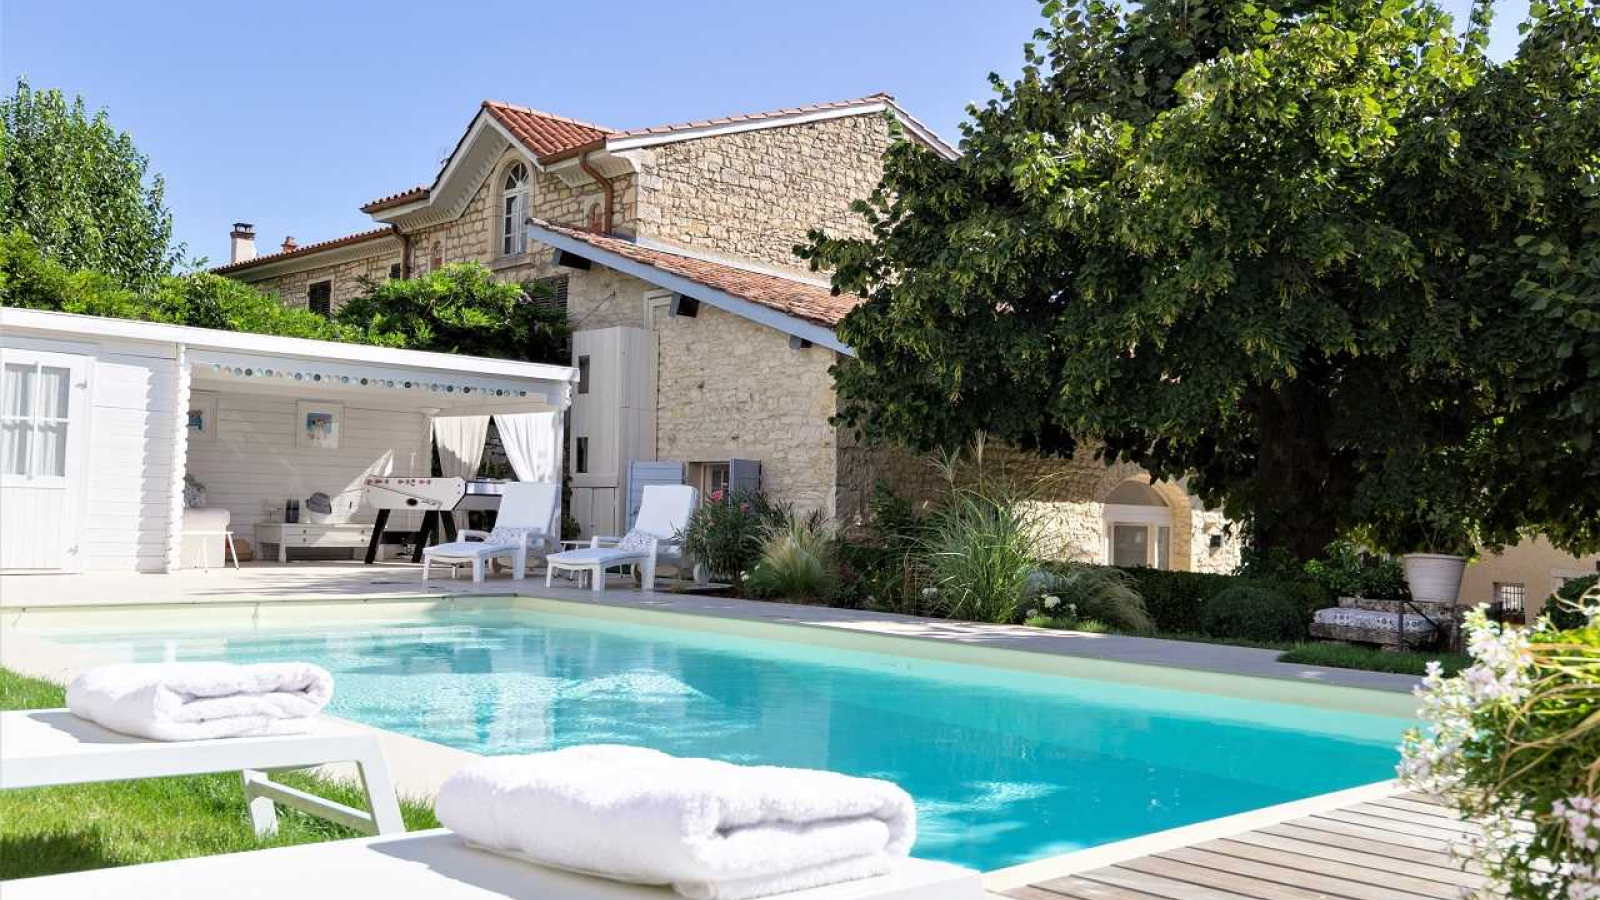 Chambres d'Hôtes 'Les deux Tilleuls' à Lucenay dans le Beaujolais - Rhône : la piscine dans le jardin en terrasse.